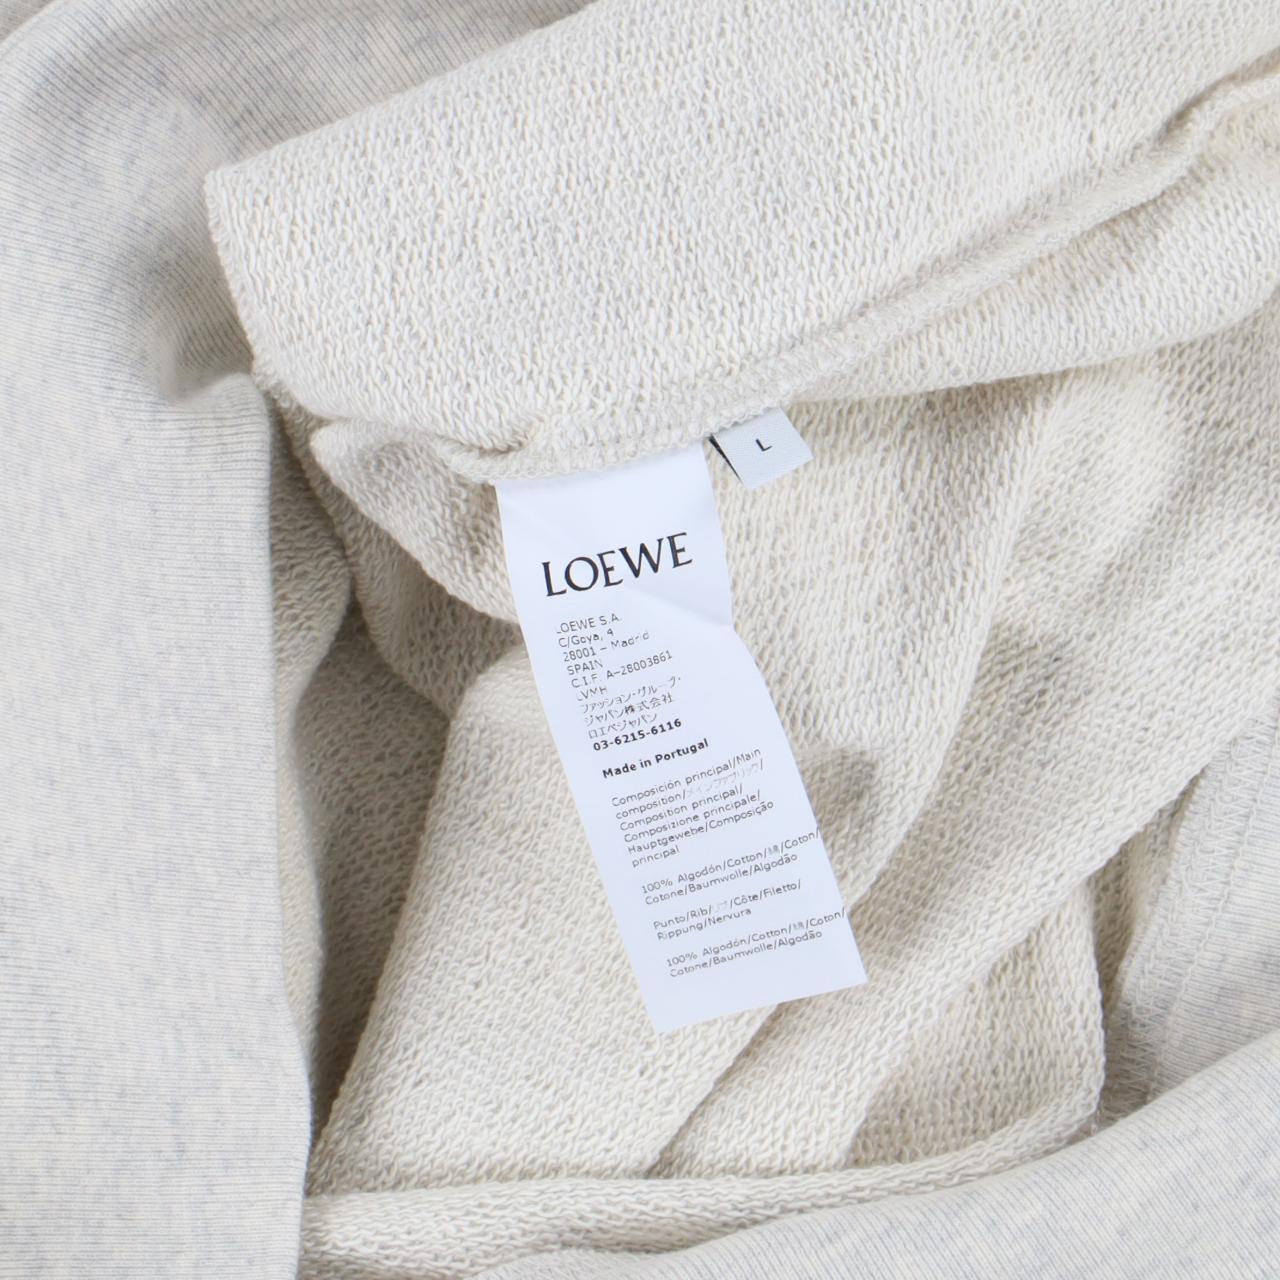 Product Image 3 - Loewe Grey Embroidered Logo Sweatshirt

-Size